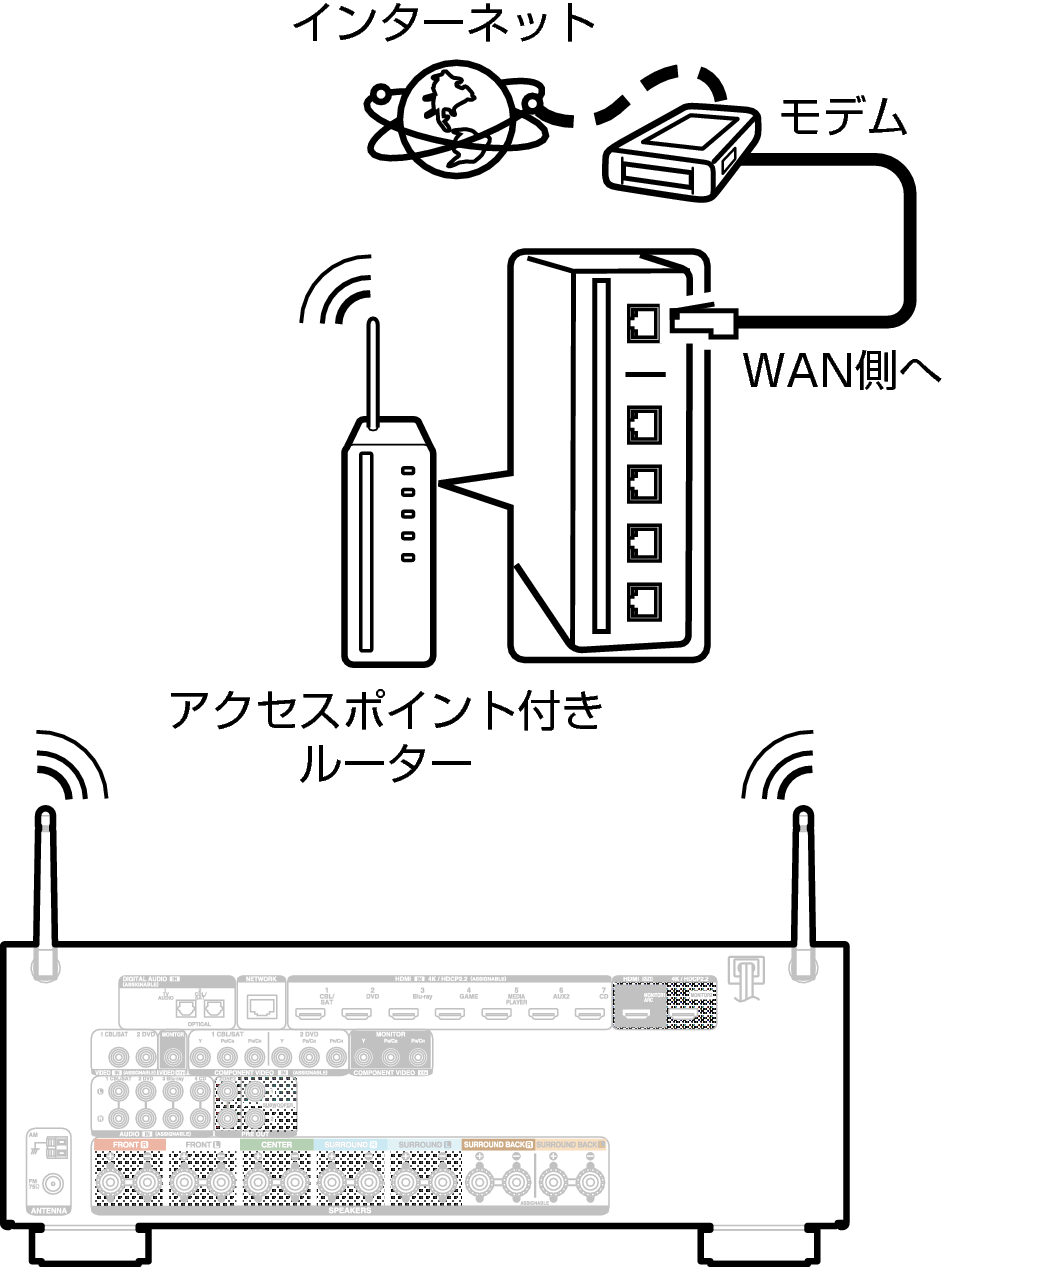 Conne Wireless X24E2